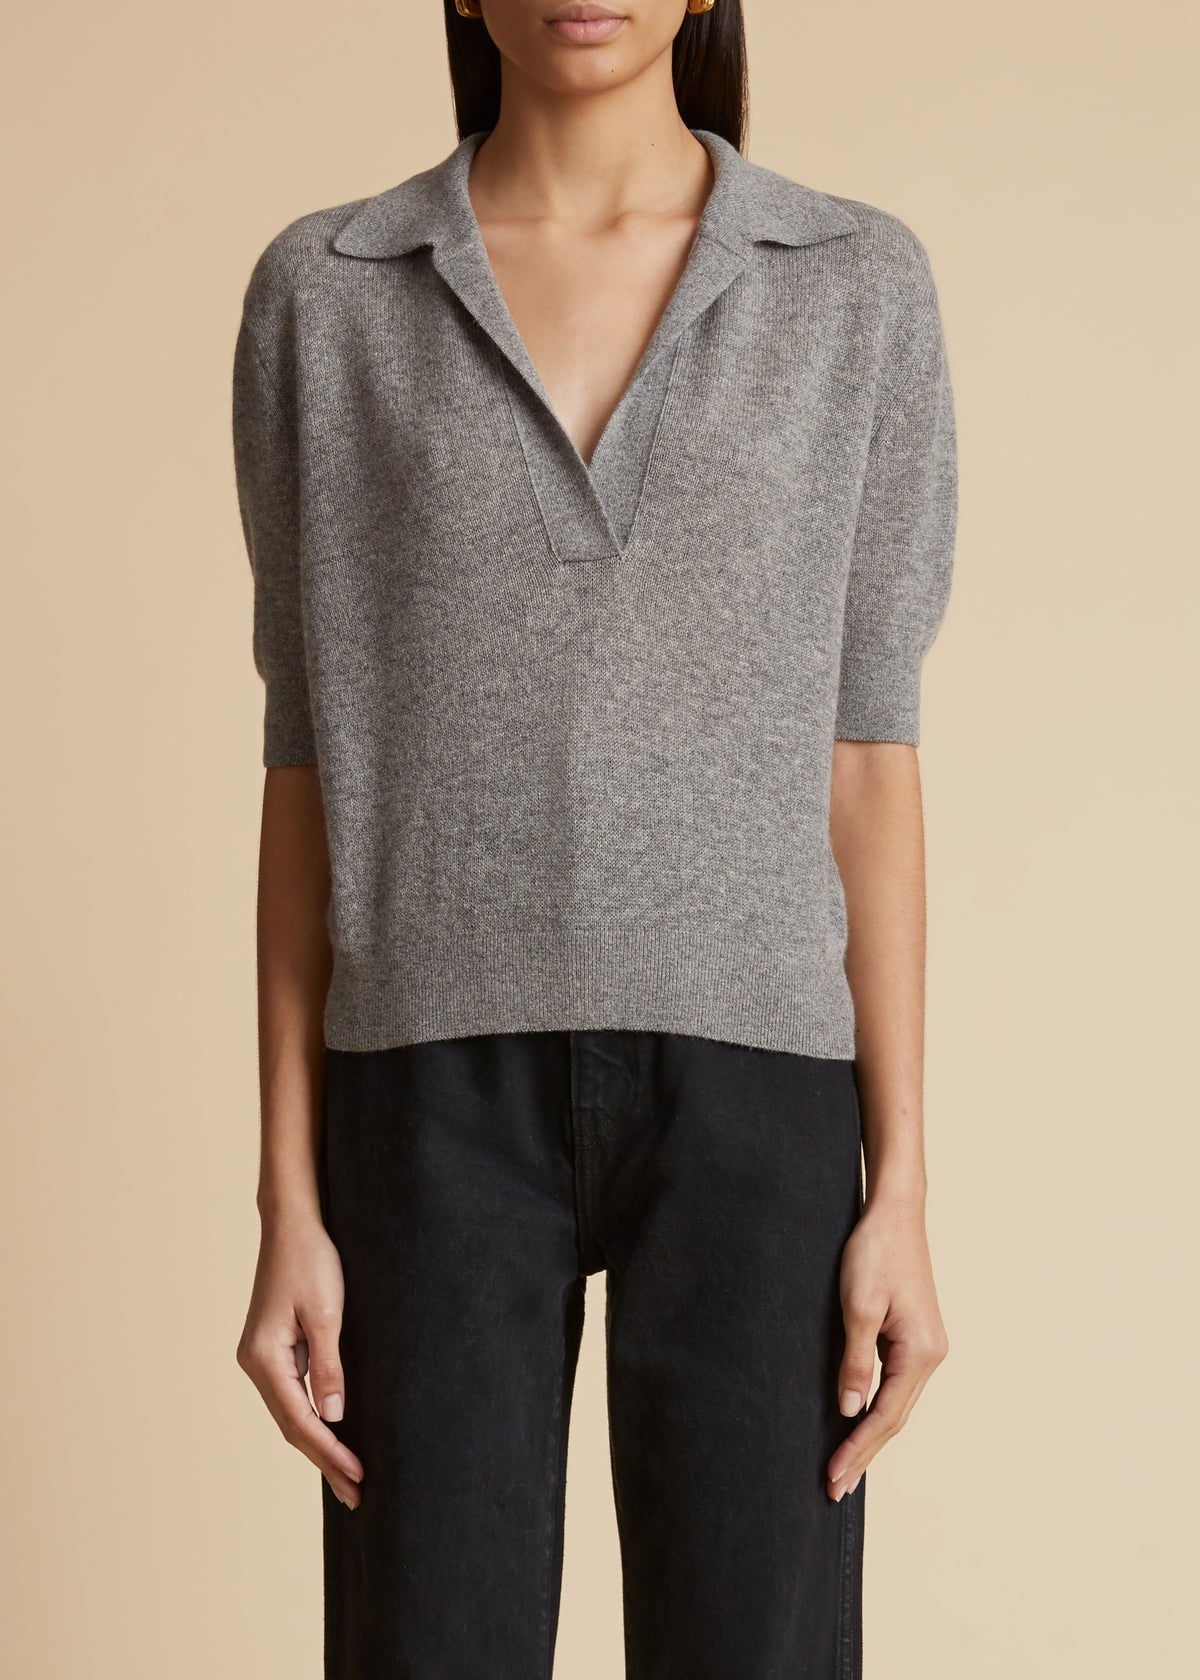 KHAITE Sierra Sweater in Grey